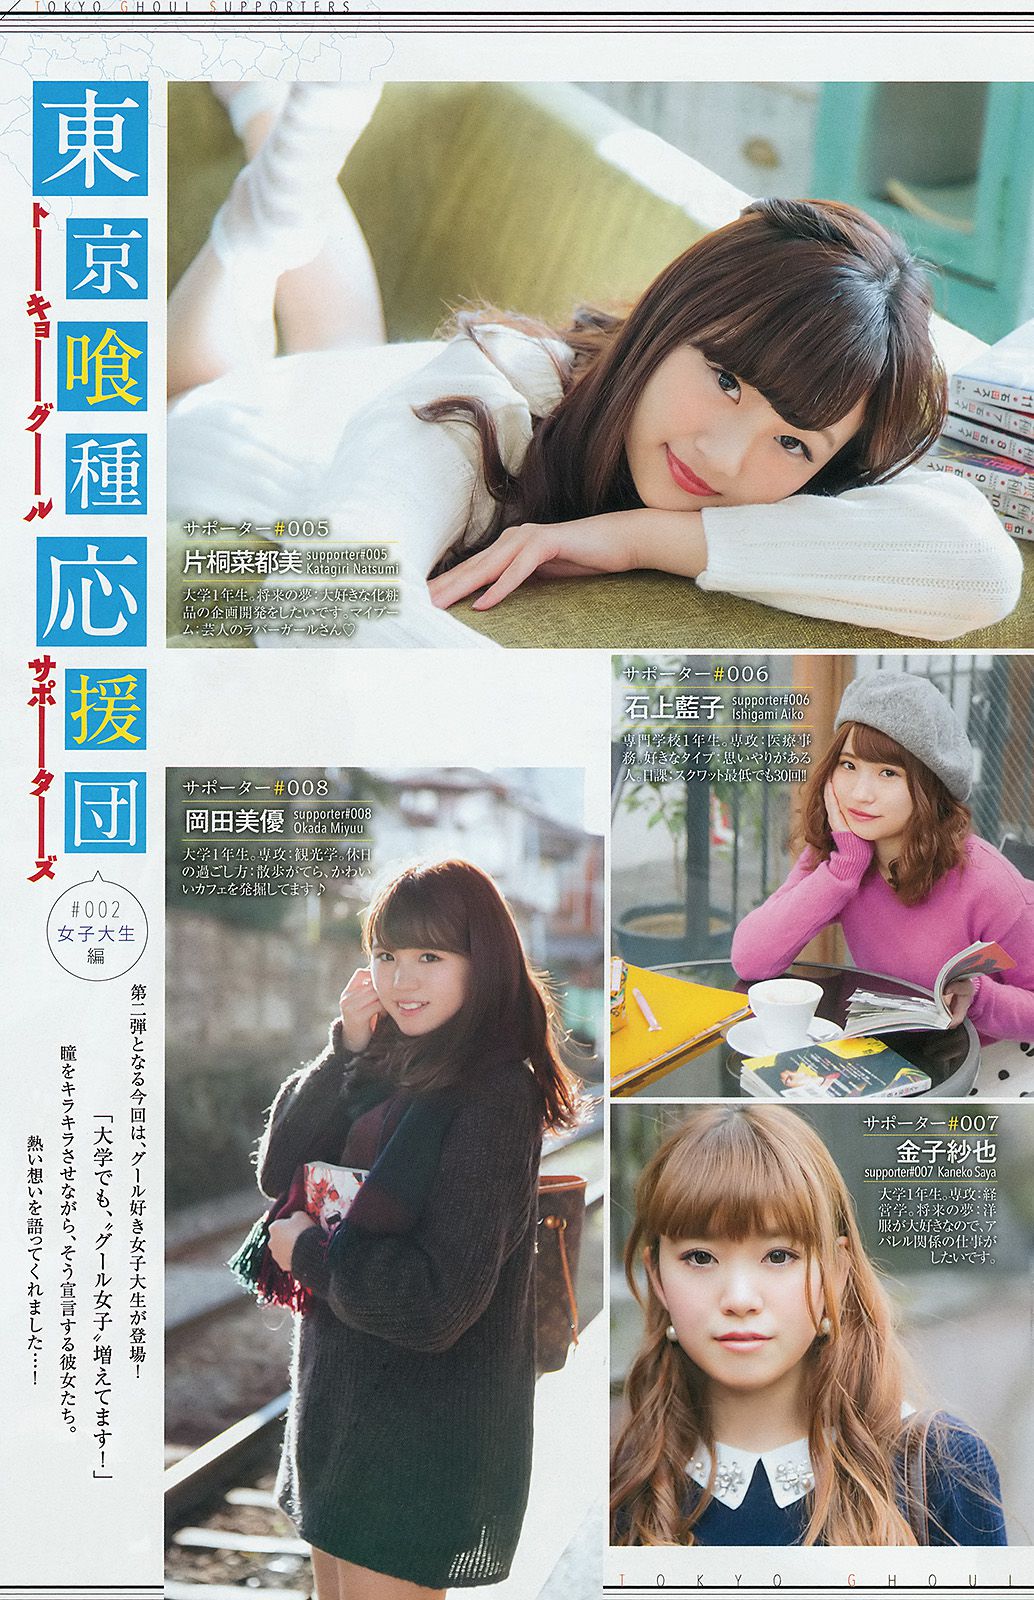 Nhất Uemo ga Fujisawa Season Mige [Weekly Young Jump Weekly Young Jump] Tạp chí ảnh số 10 năm 2015 Trang 3 No.a1415d